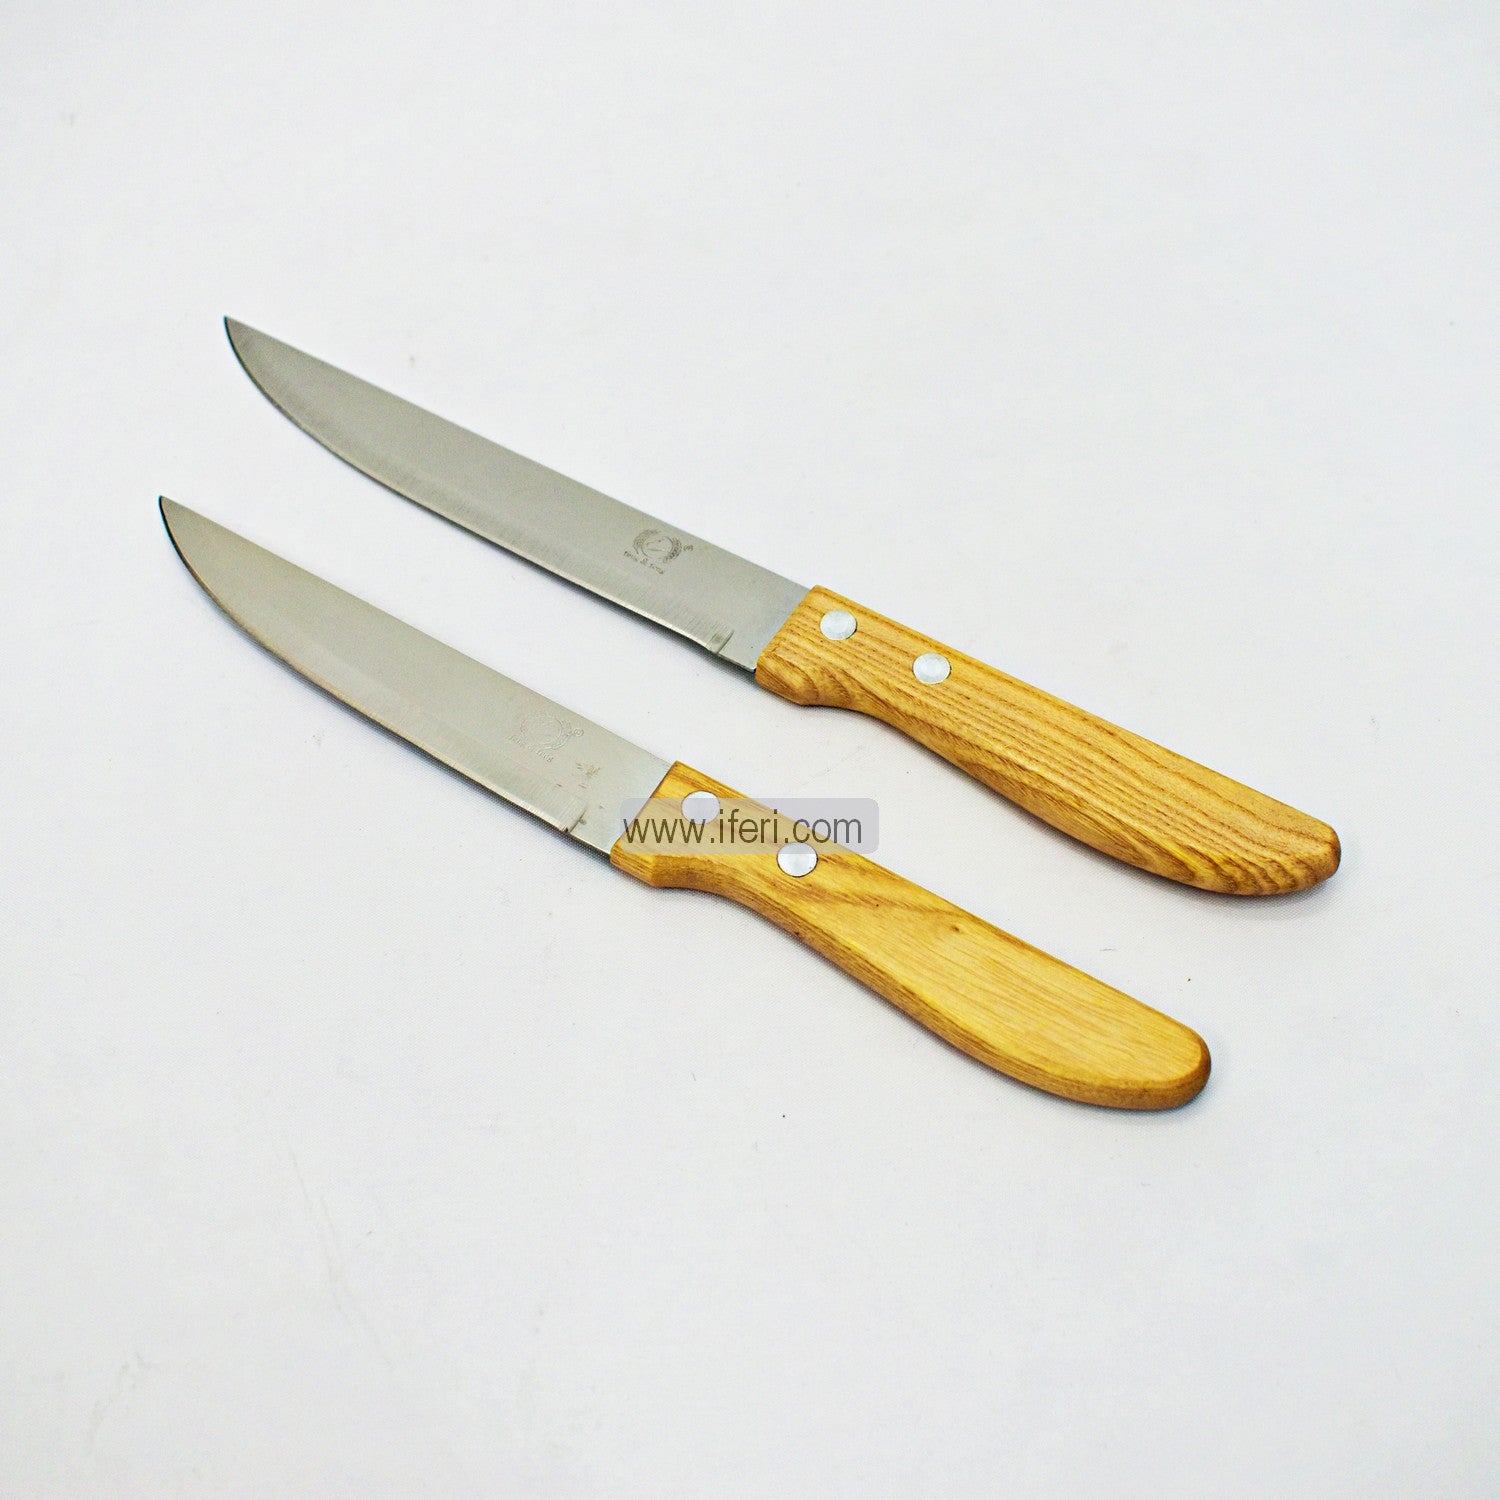 2 Pcs Stainless Steel Fruit Knife LB1318